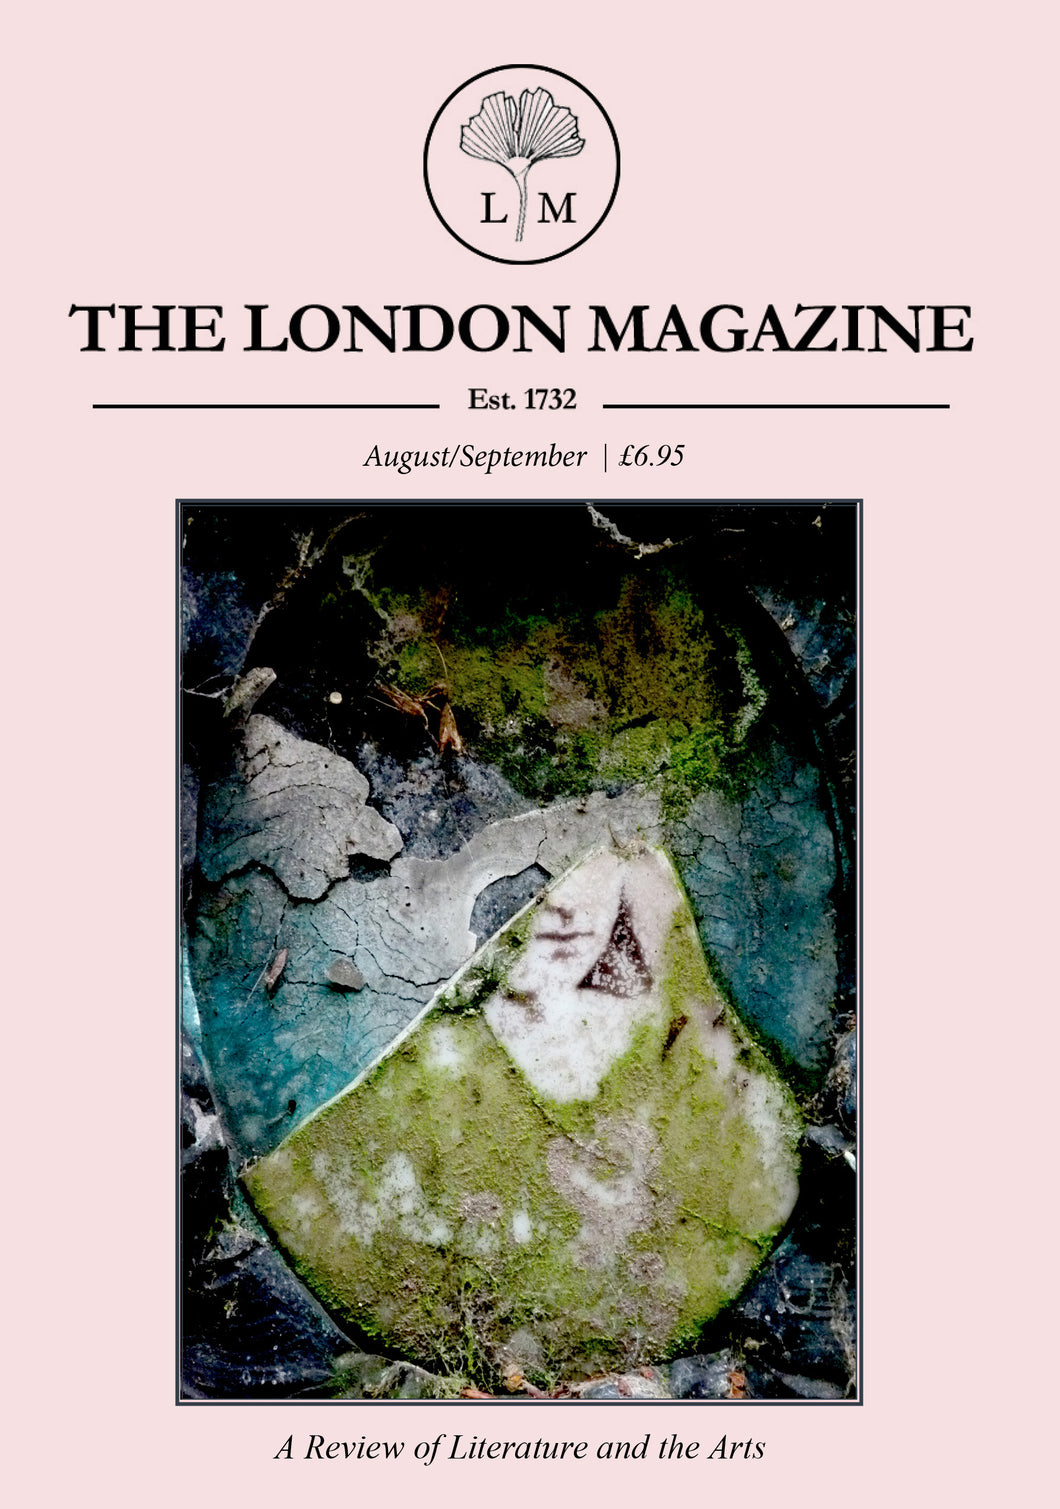 The London Magazine - August/September 2019